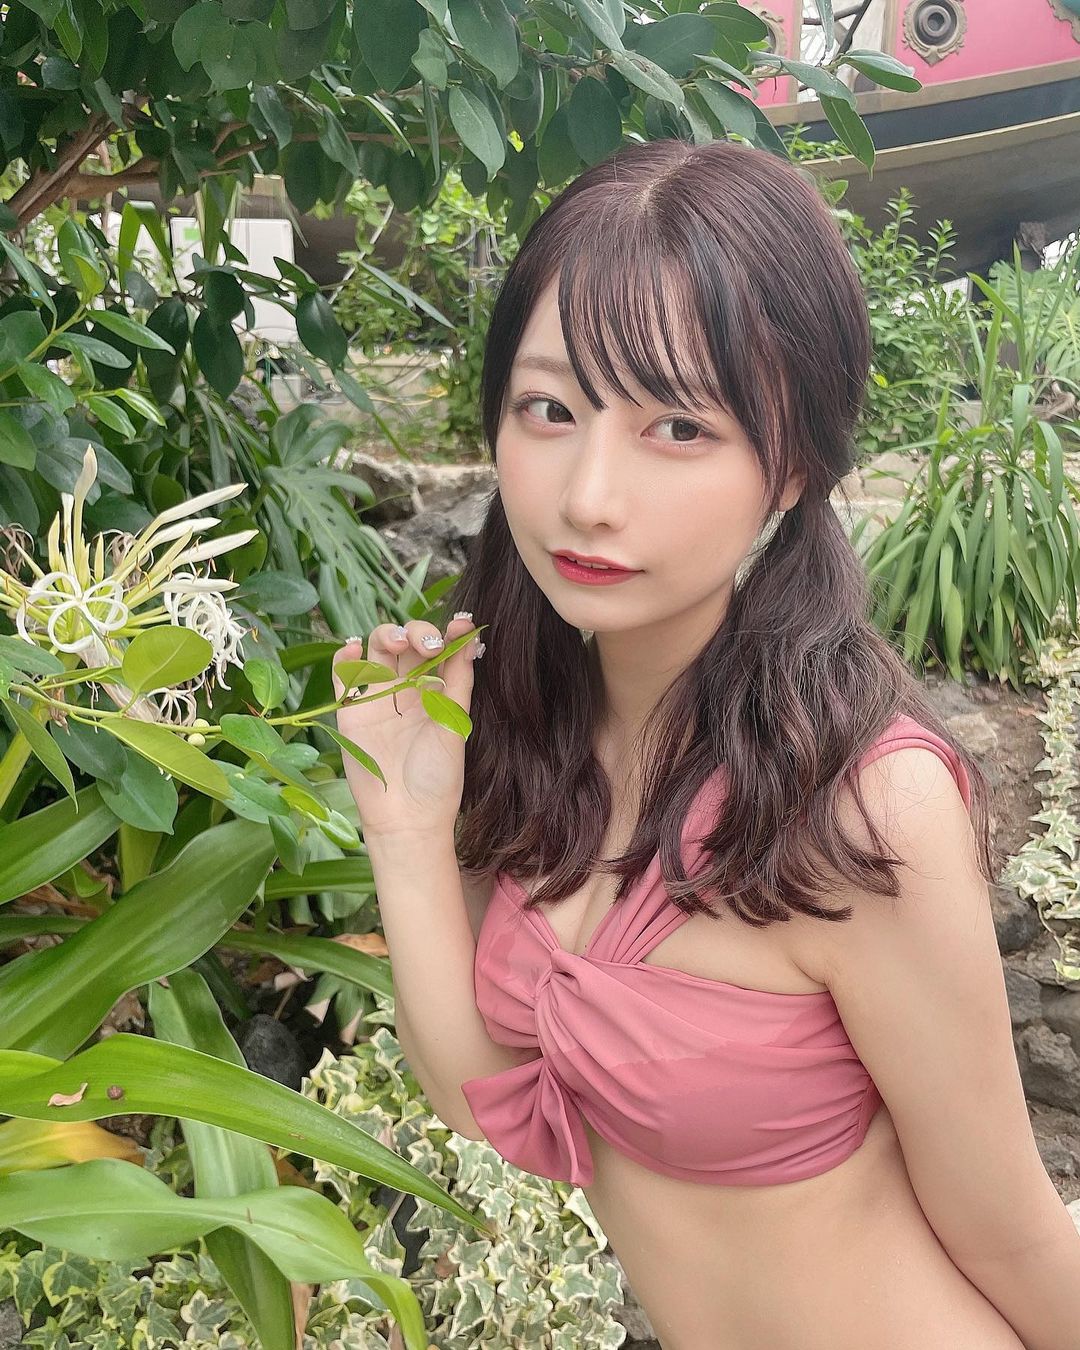 ไอดอลสาวญี่ปุ่น Suzuki Yuka มีข่าวลือว่าจะไปถ่ายหนังAVหลังโดนไล่ออกจากวง